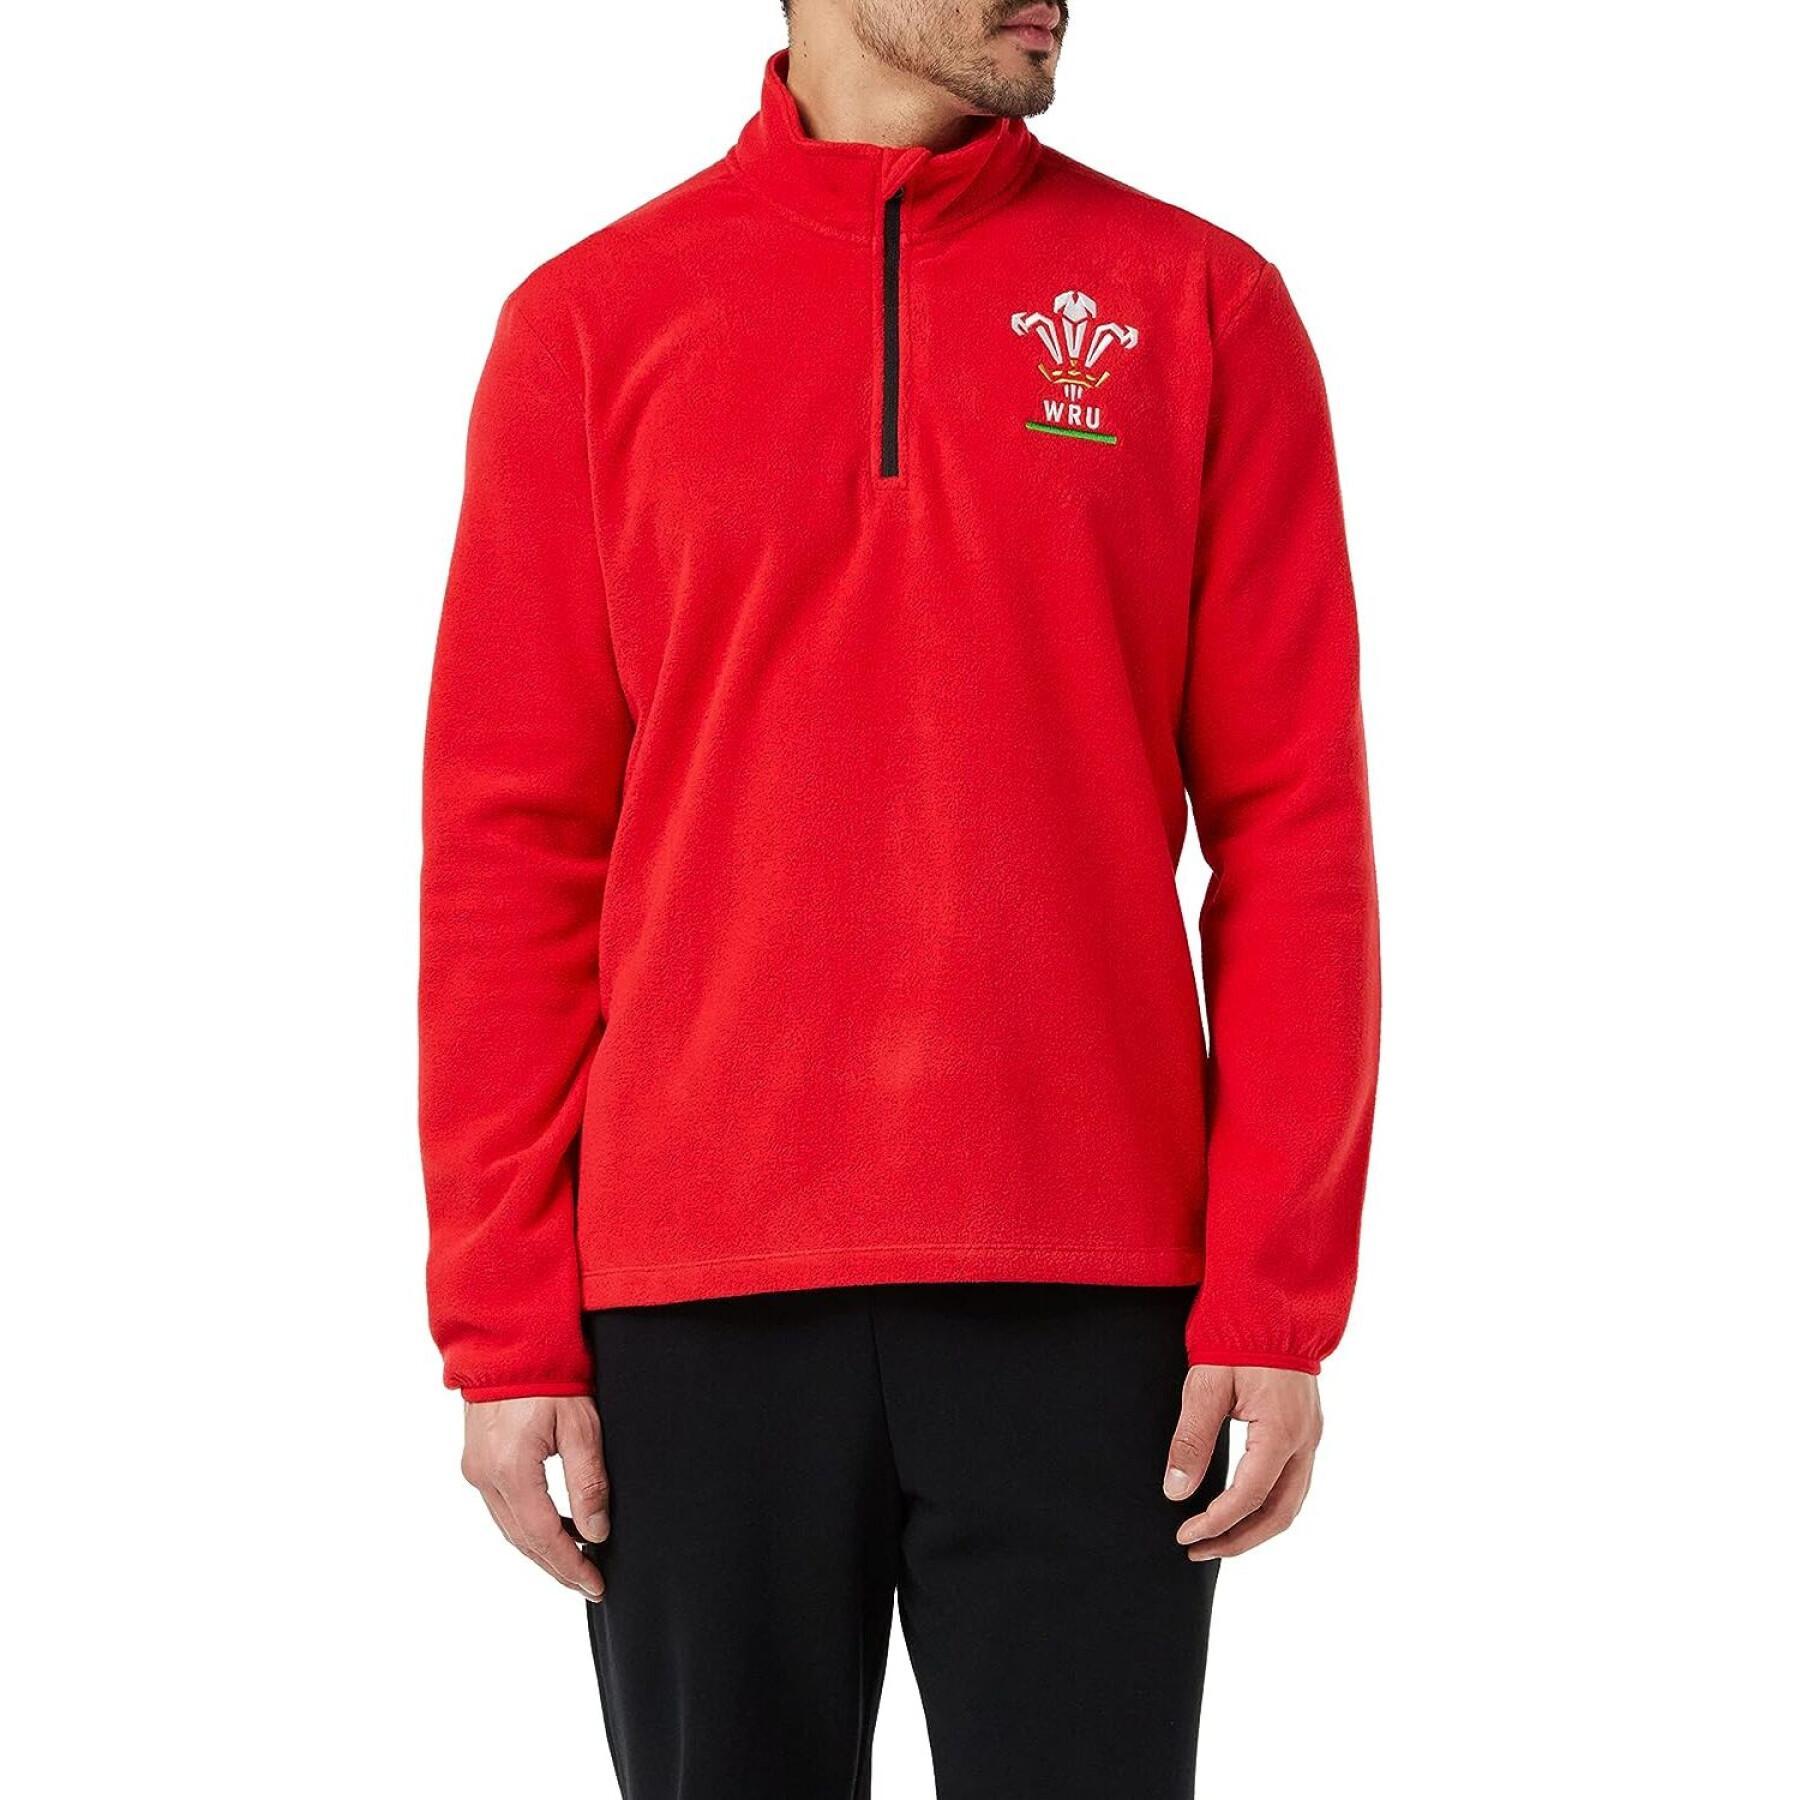 1/4 zip sweatshirt Pays de Galles Rugby XV Merch CA